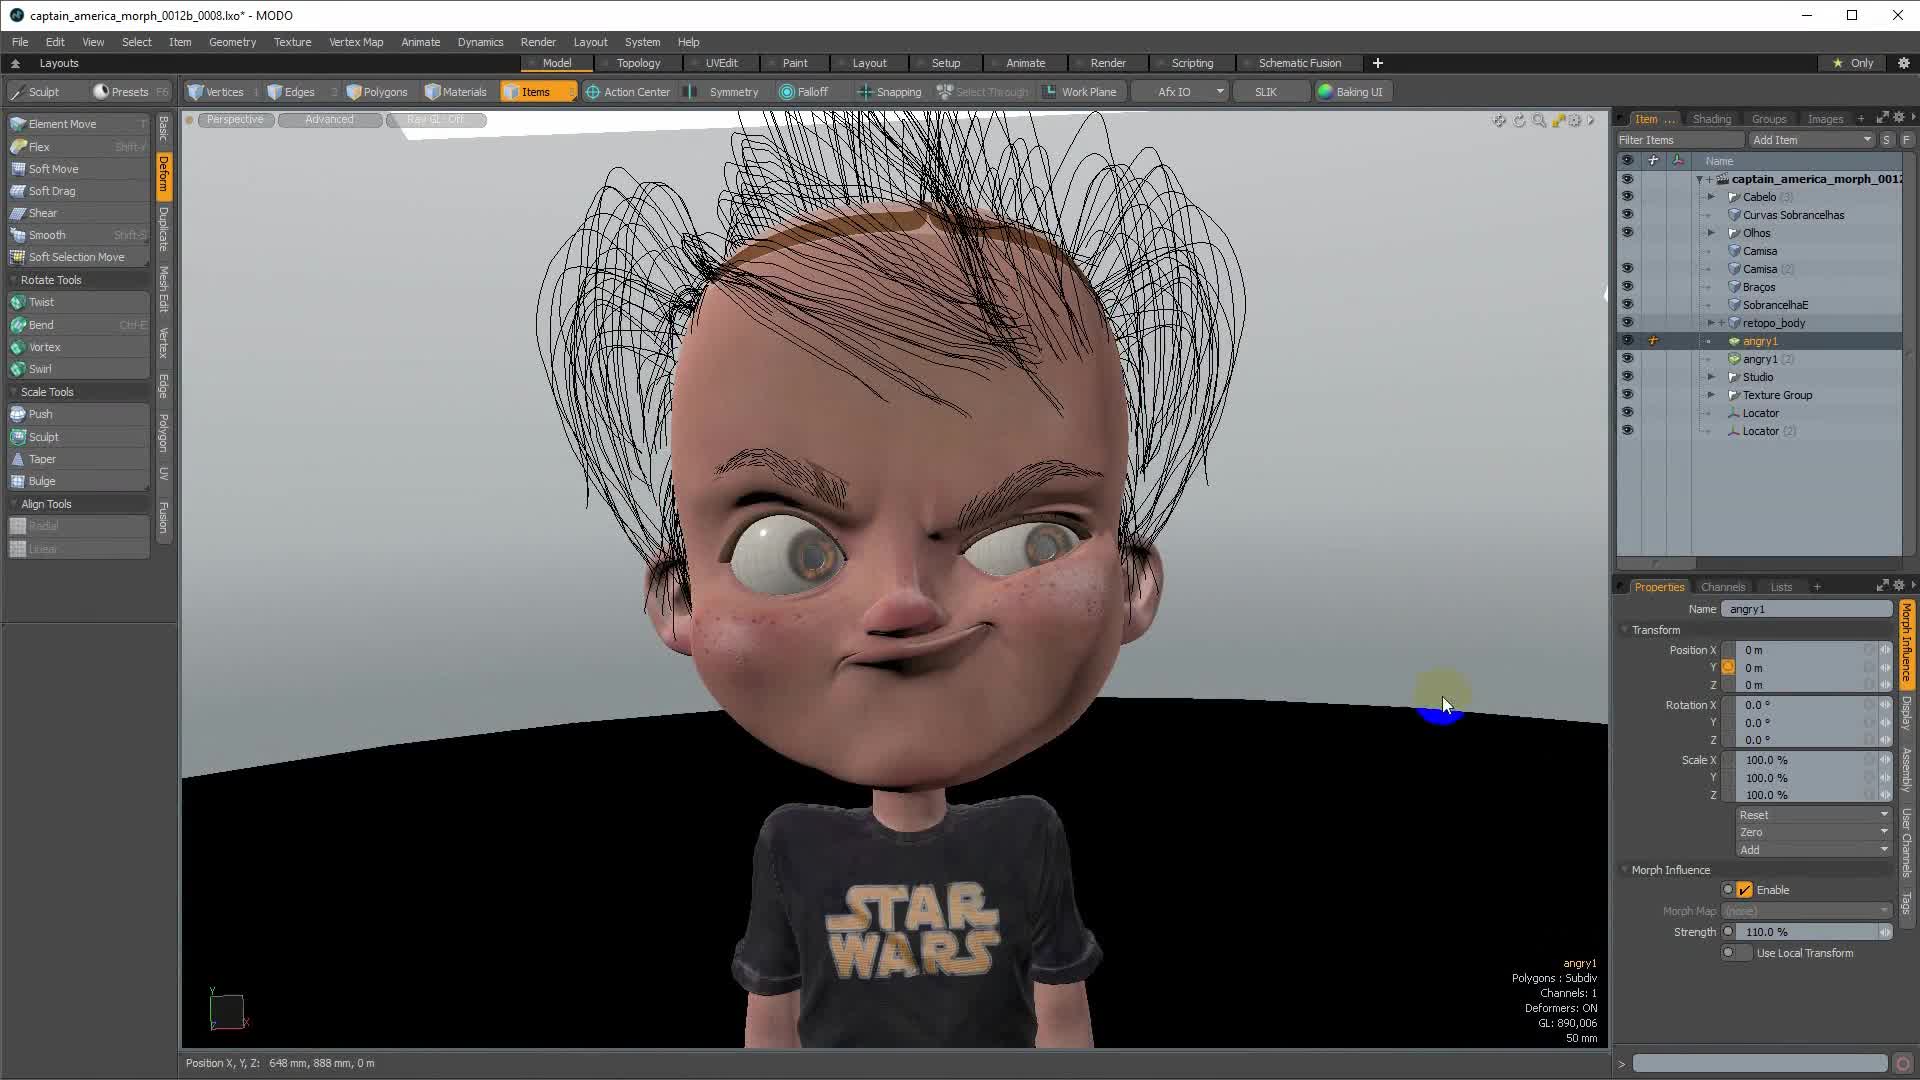 Cinema 4D - Making Of Star Wars Kid (Tutorial)